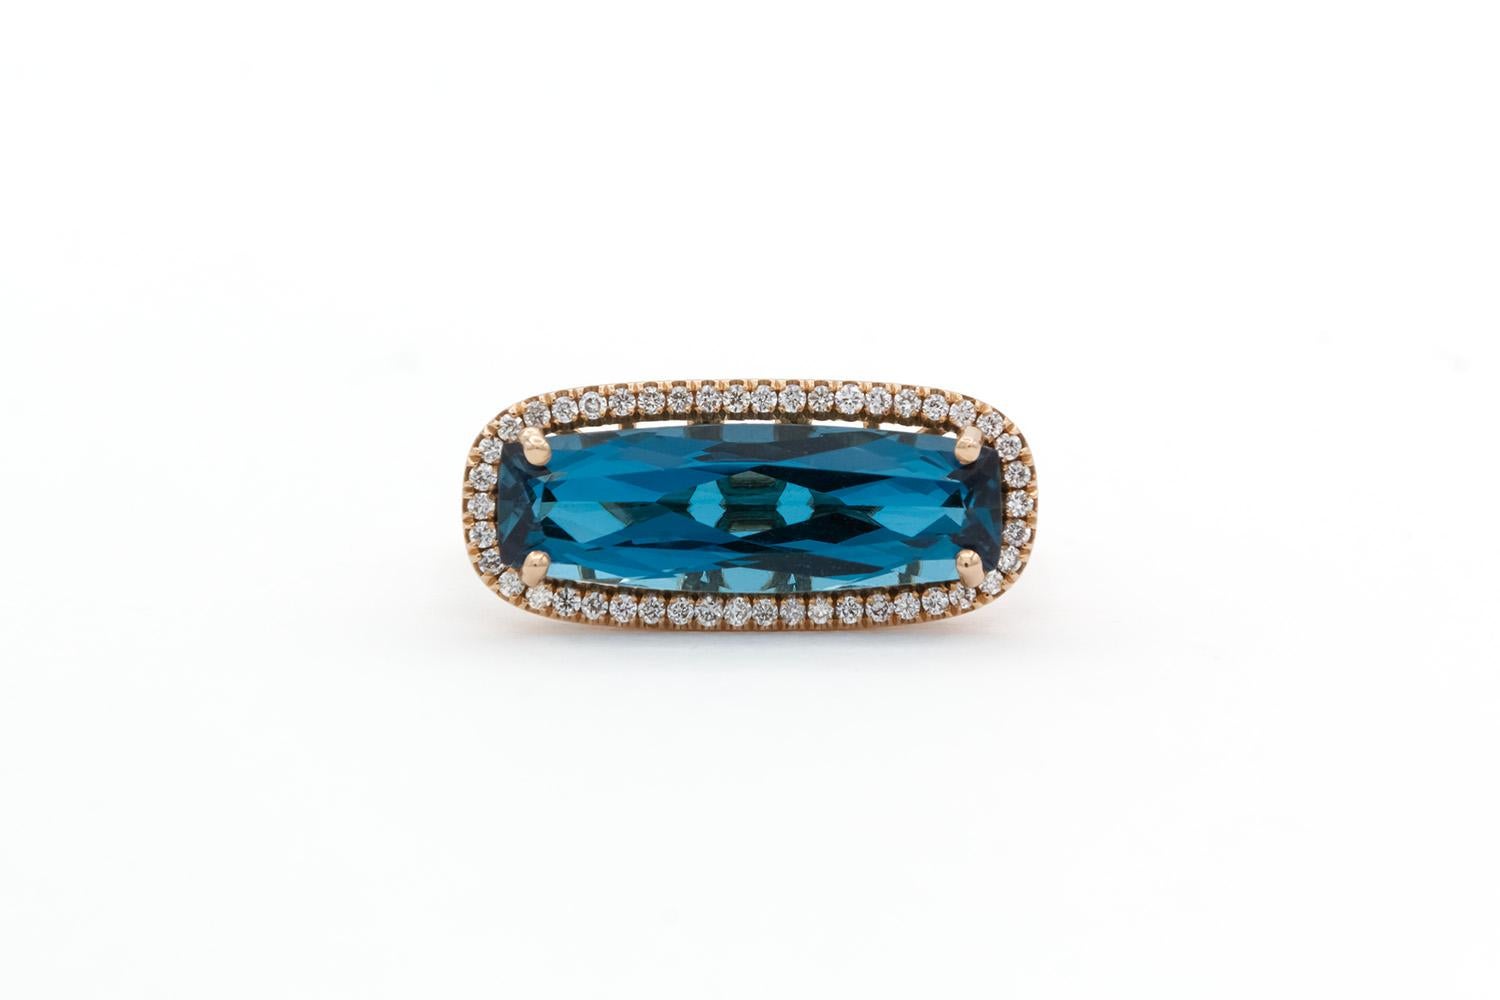 Wir freuen uns, diesen brandneuen ungetragenen Suzanne Kalan 18k Rose Gold Blue Topaz & Diamond Ring anzubieten. Dieser atemberaubende Ring besteht aus einem länglichen, oval geschliffenen natürlichen Blautopas, der von 0,35 ct runden Diamanten im